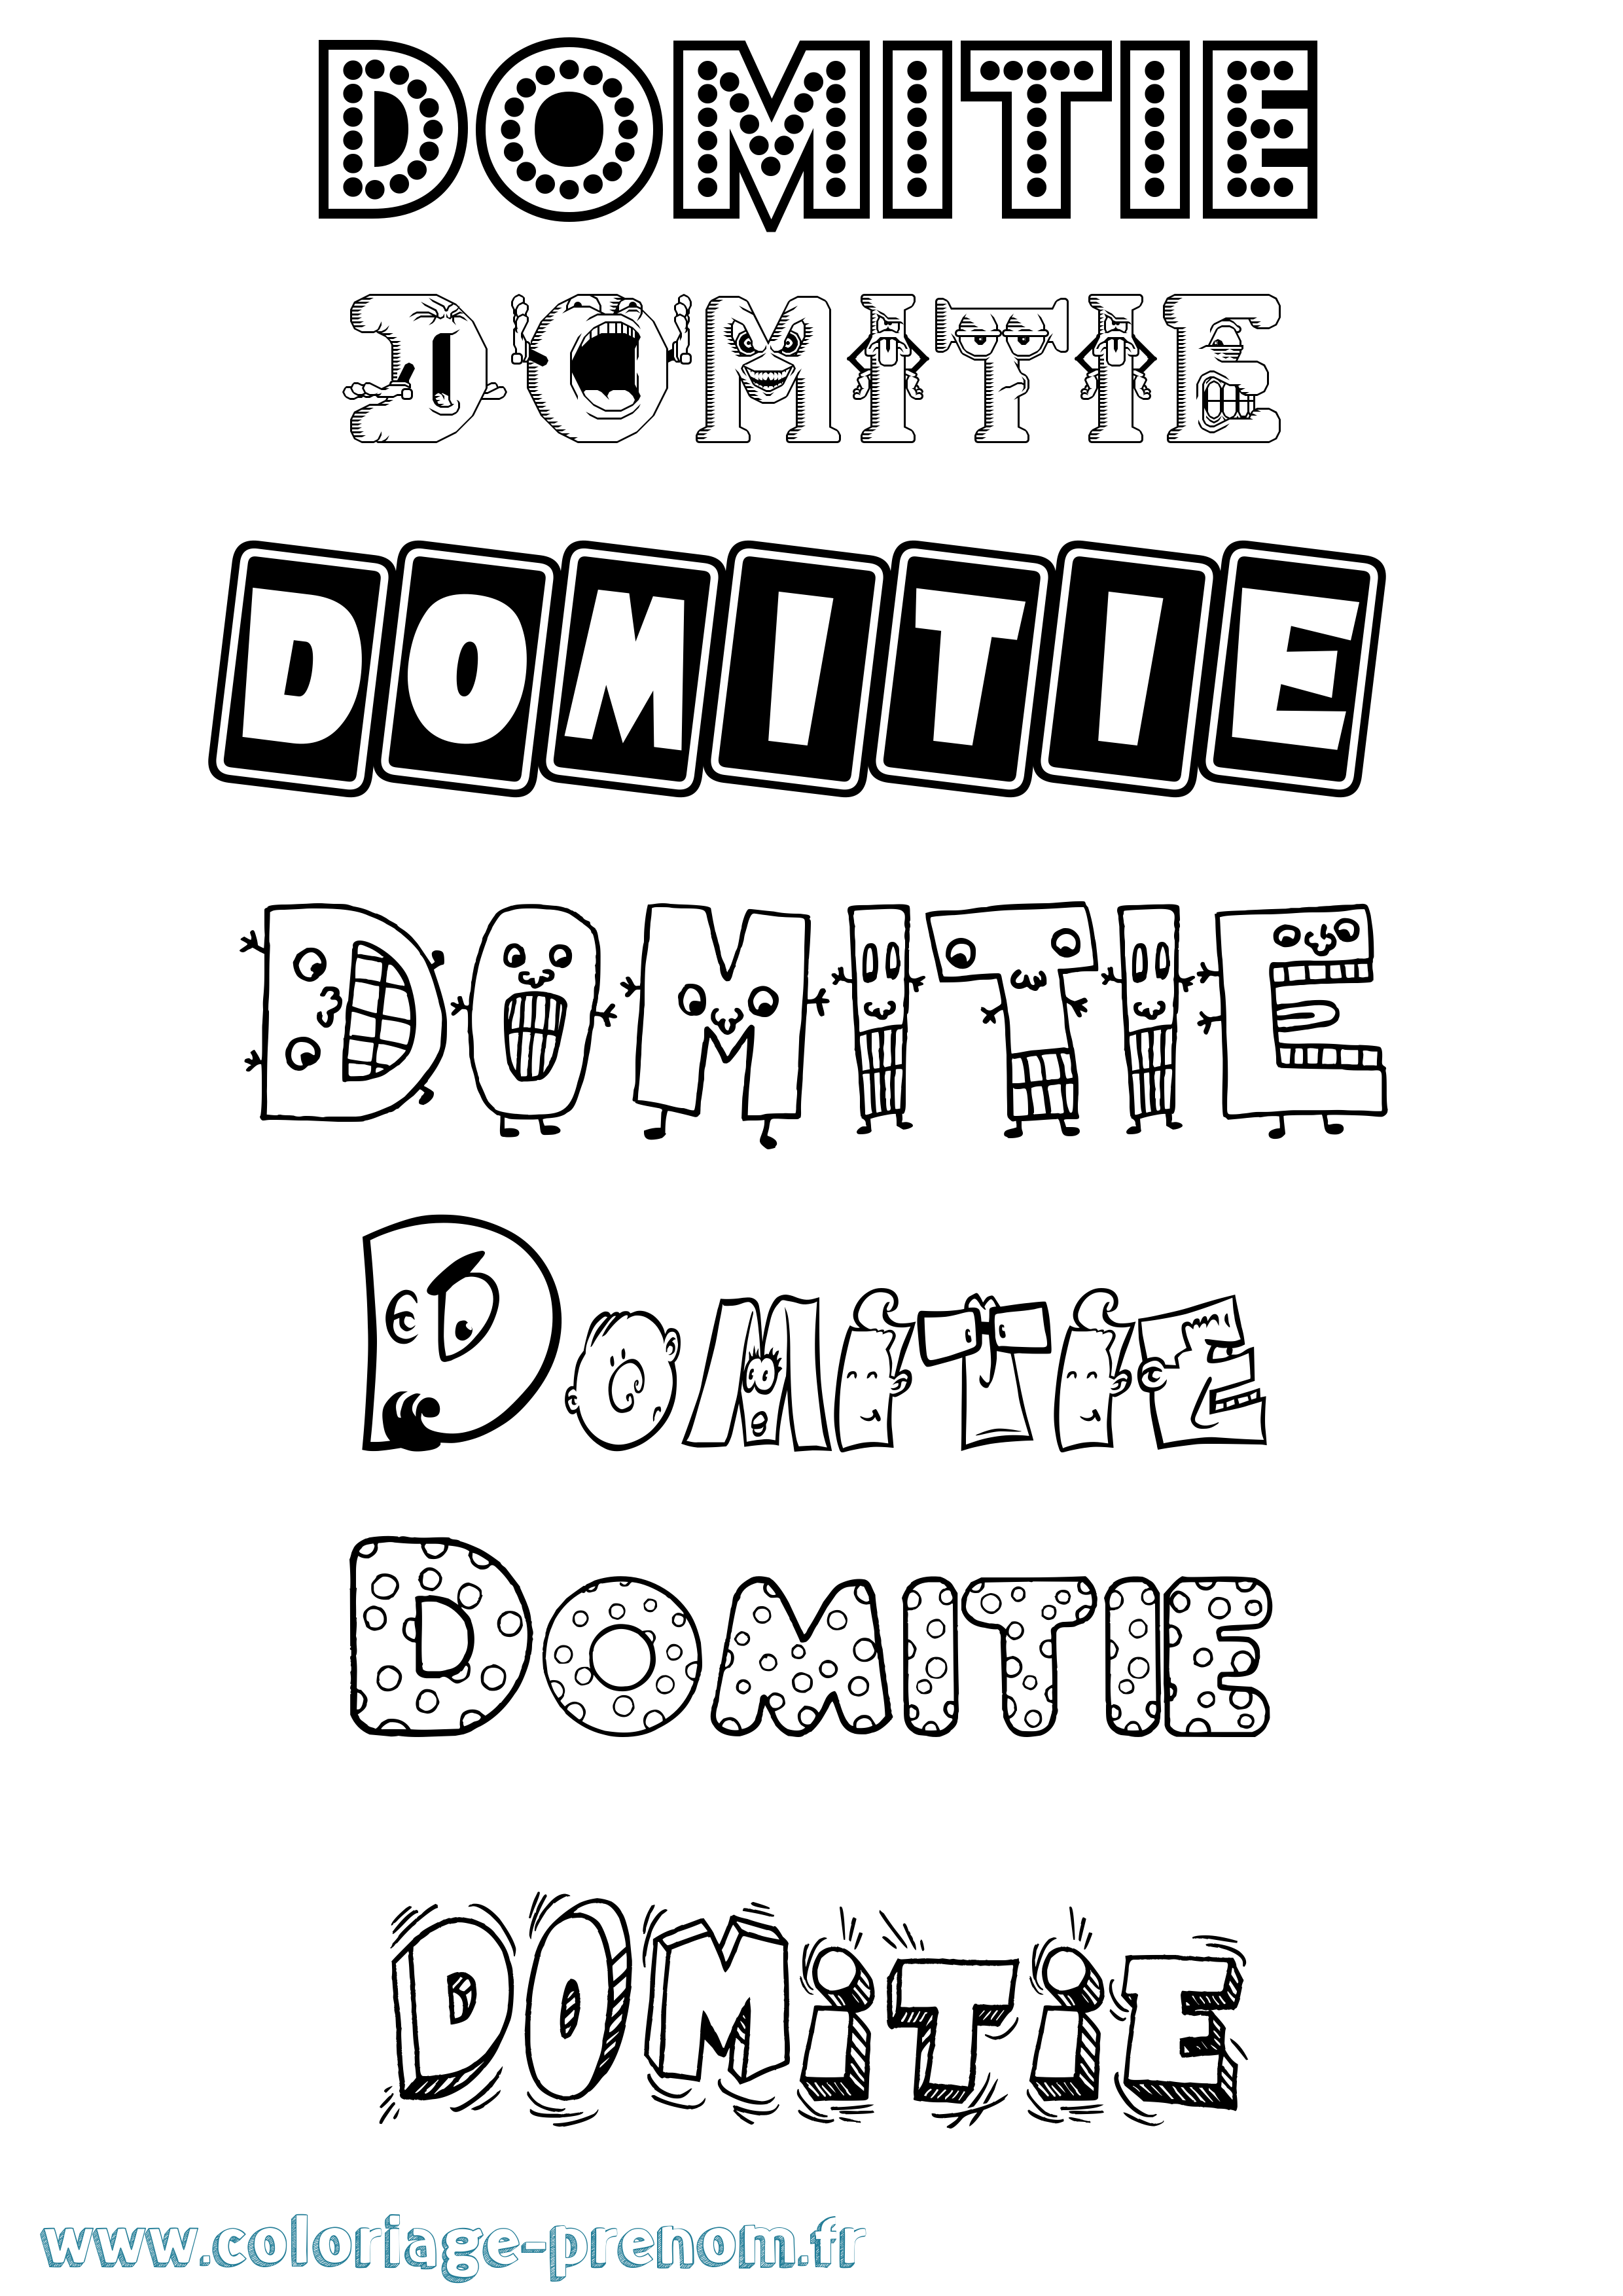 Coloriage prénom Domitie Fun